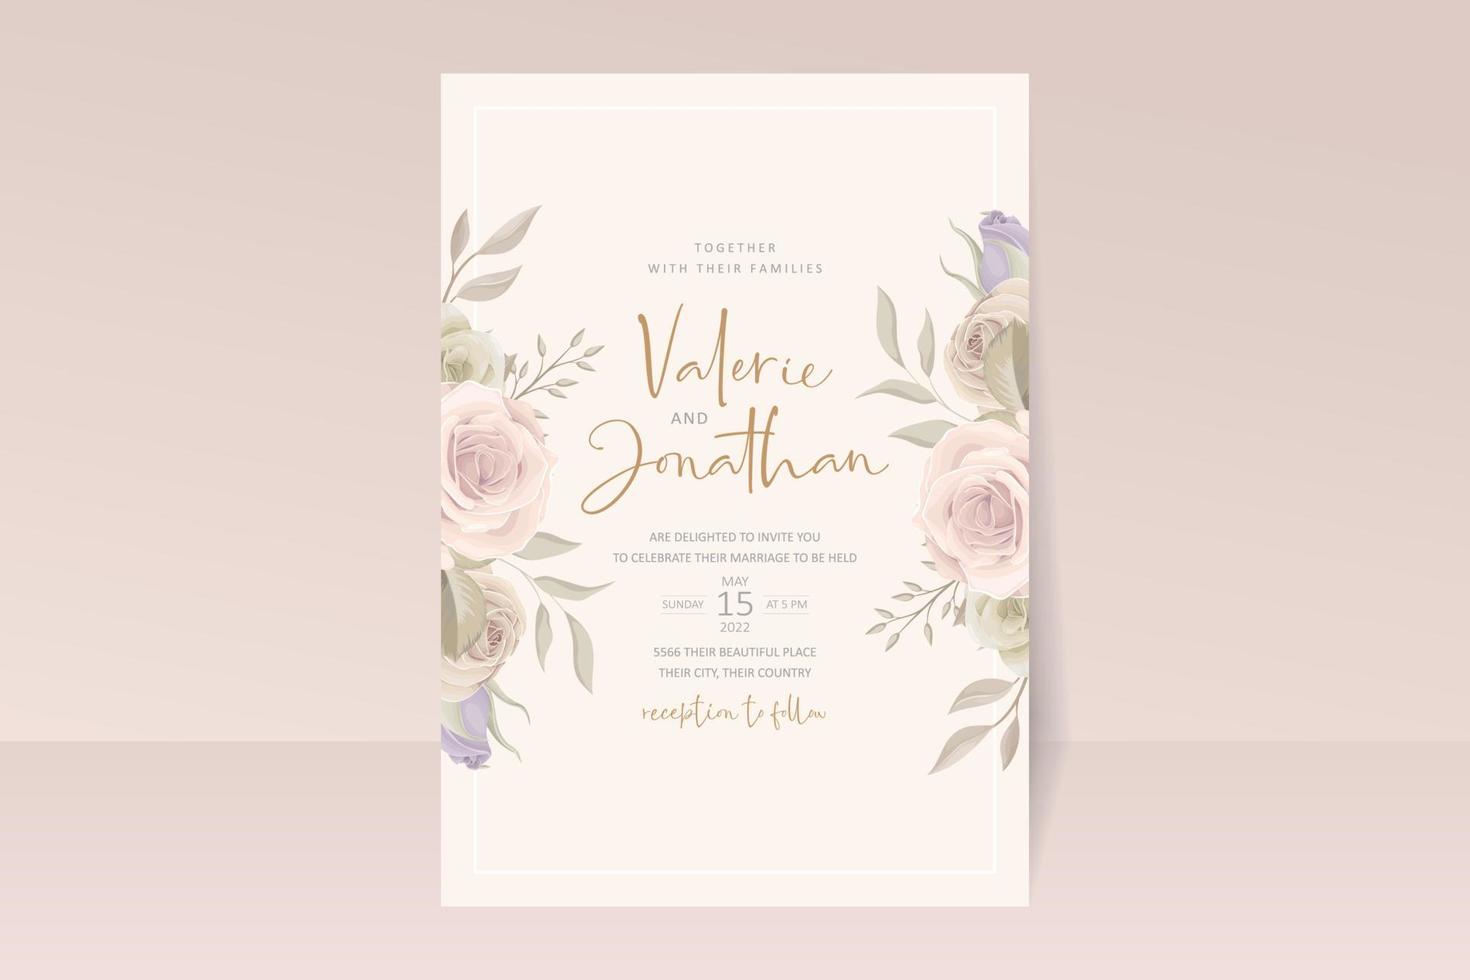 Hochzeitseinladungskartenschablone mit Blumenmuster vektor